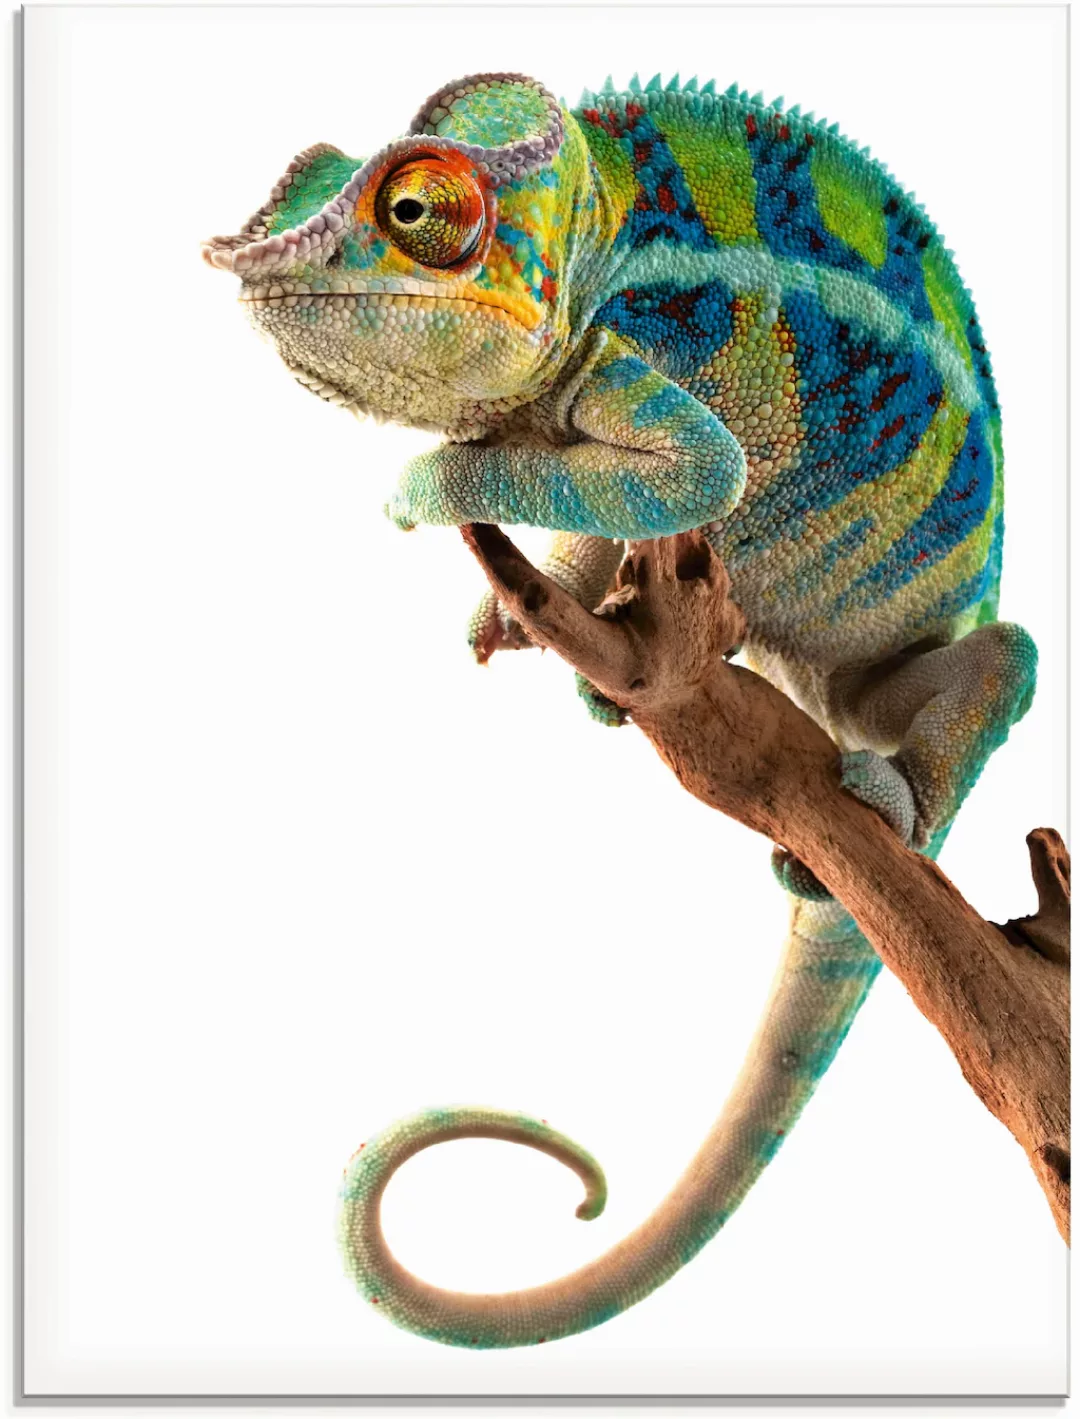 Artland Glasbild »Ambanja Panther Chamäleon«, Reptilien, (1 St.) günstig online kaufen